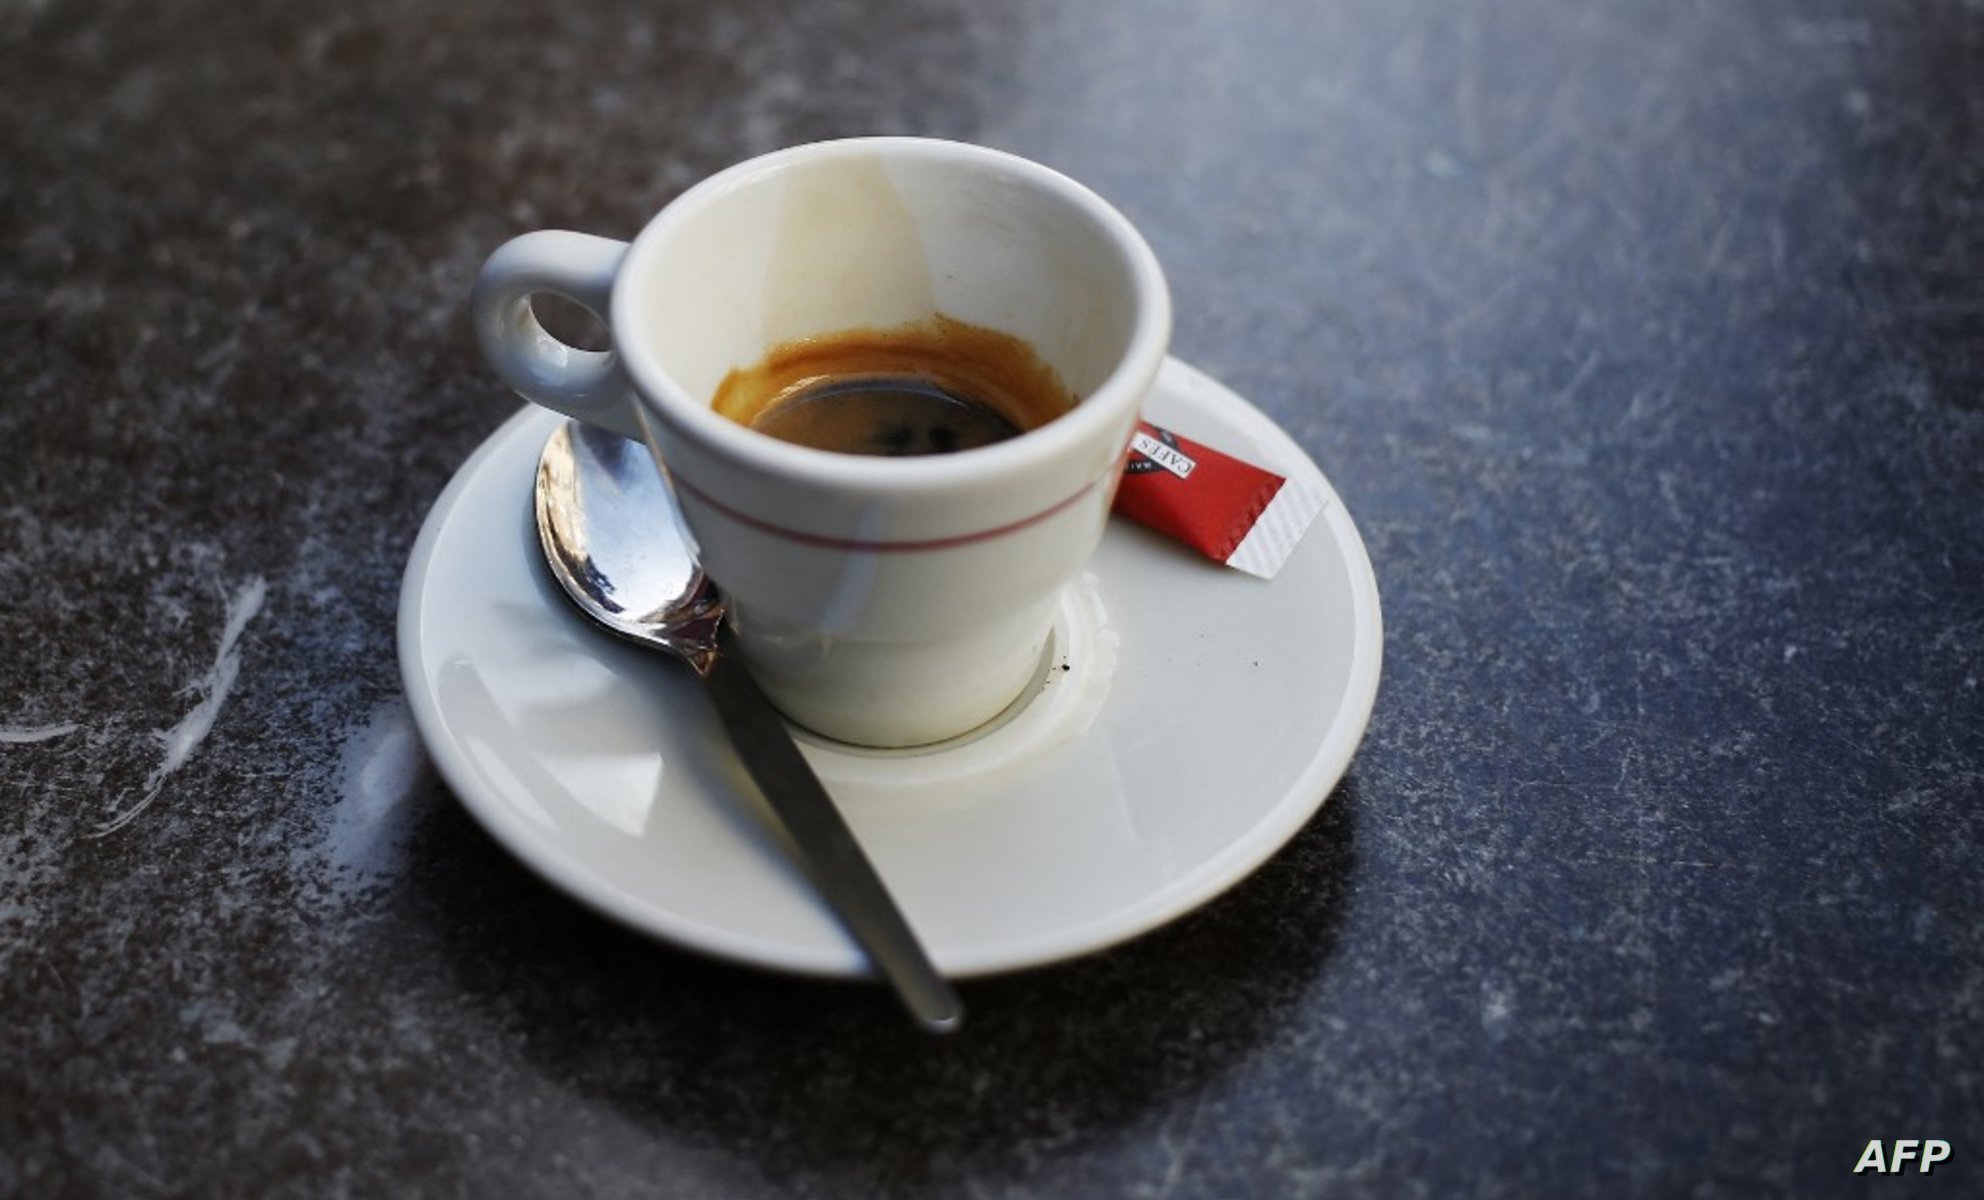 دراسة: فوائد حاسمة لـ3 أكواب من القهوة يوميا